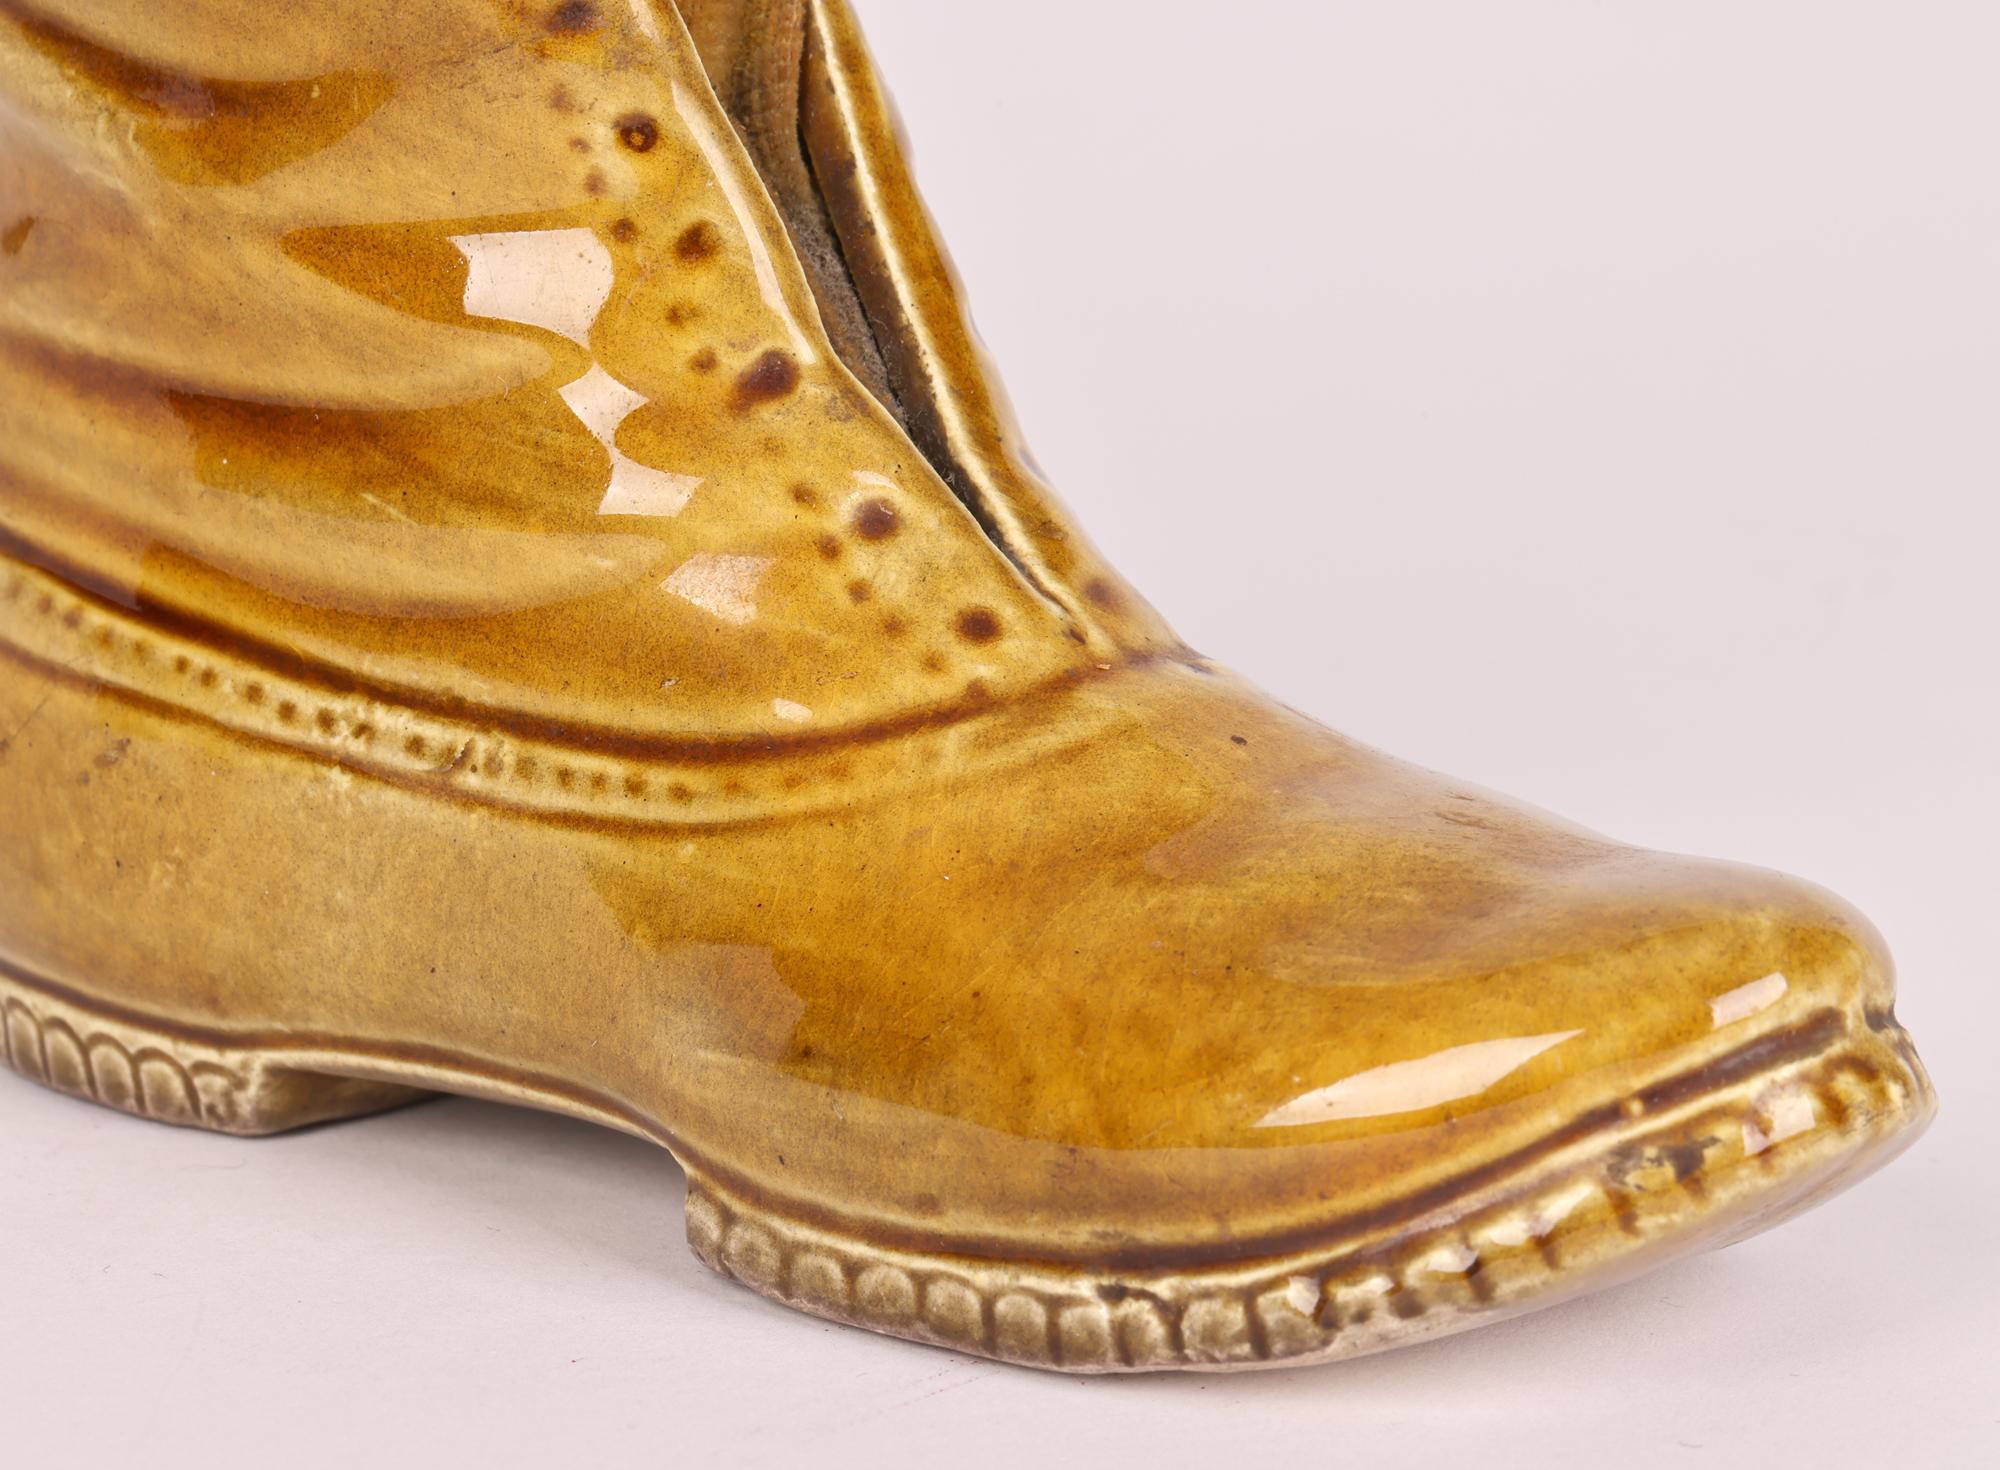 Un inhabituel et grand coussin à épingles pour bottes en poterie vernie au miel de l'époque victorienne, probablement du Staffordshire, datant du XIXe siècle. La grande botte est bien empotée, capturant les plis et le caractère du cuir, avec un